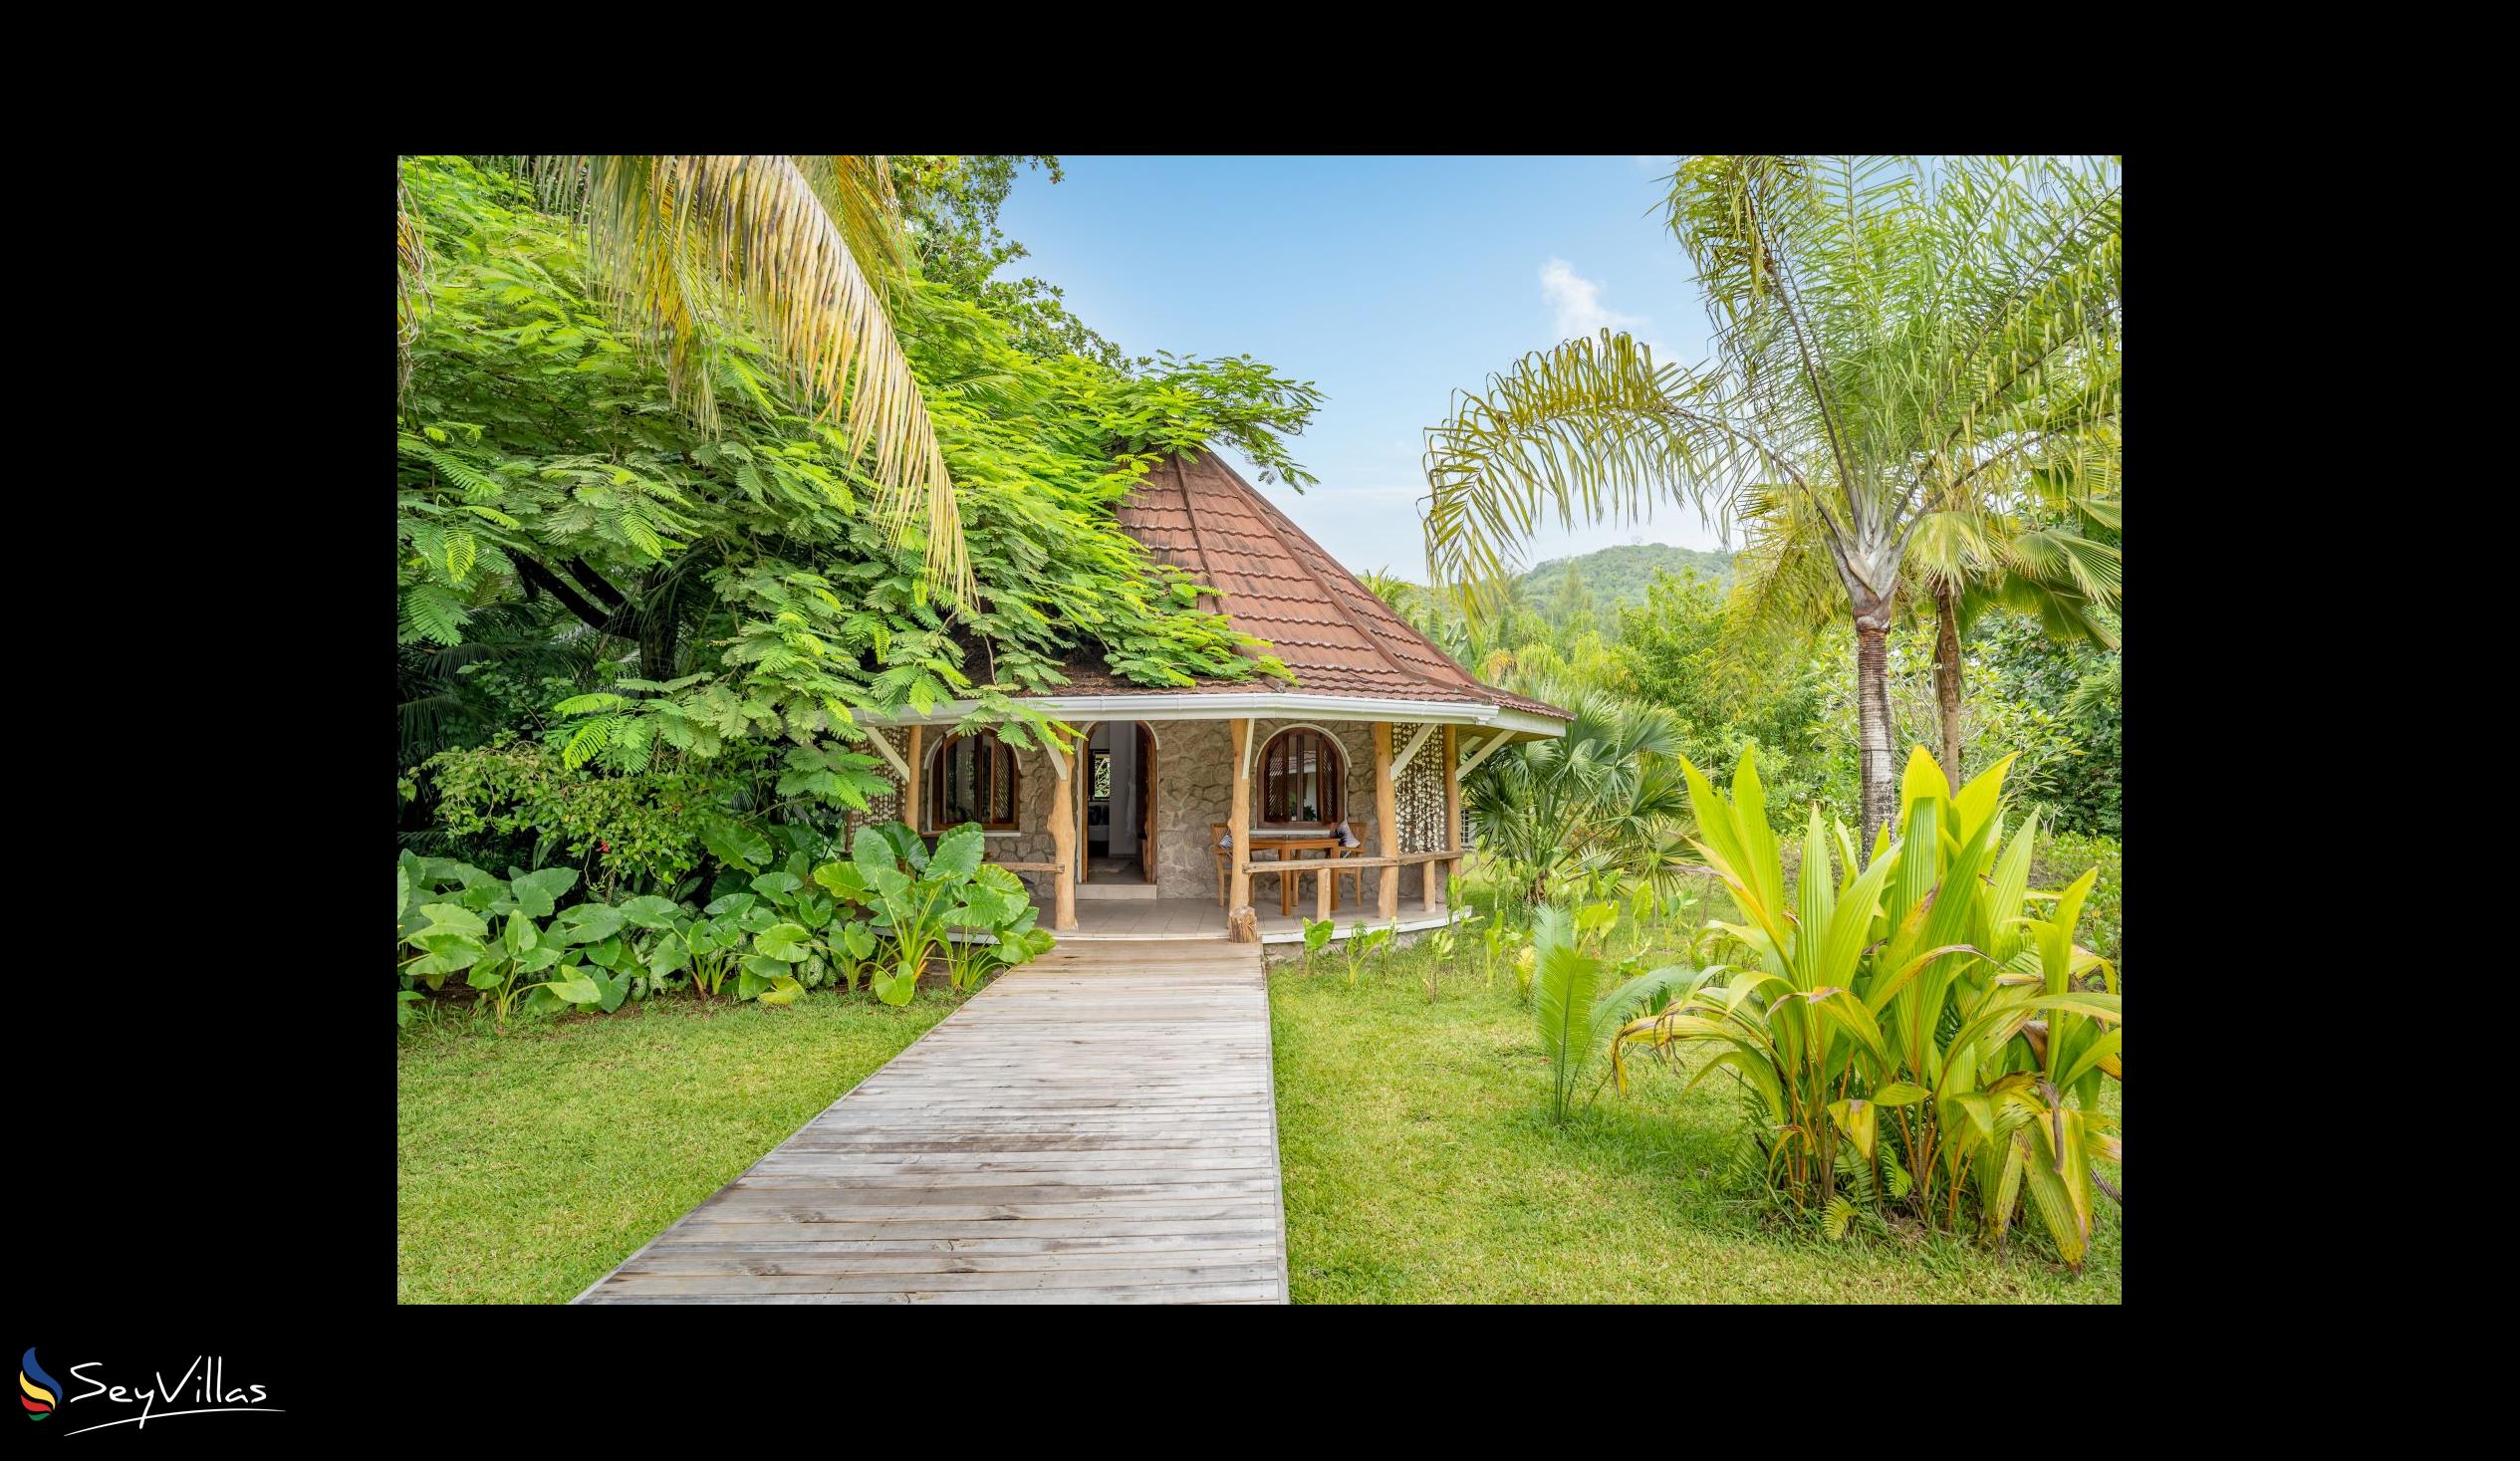 Photo 45: Bliss Hotel Praslin - Eden Garden - Family Suite - Praslin (Seychelles)